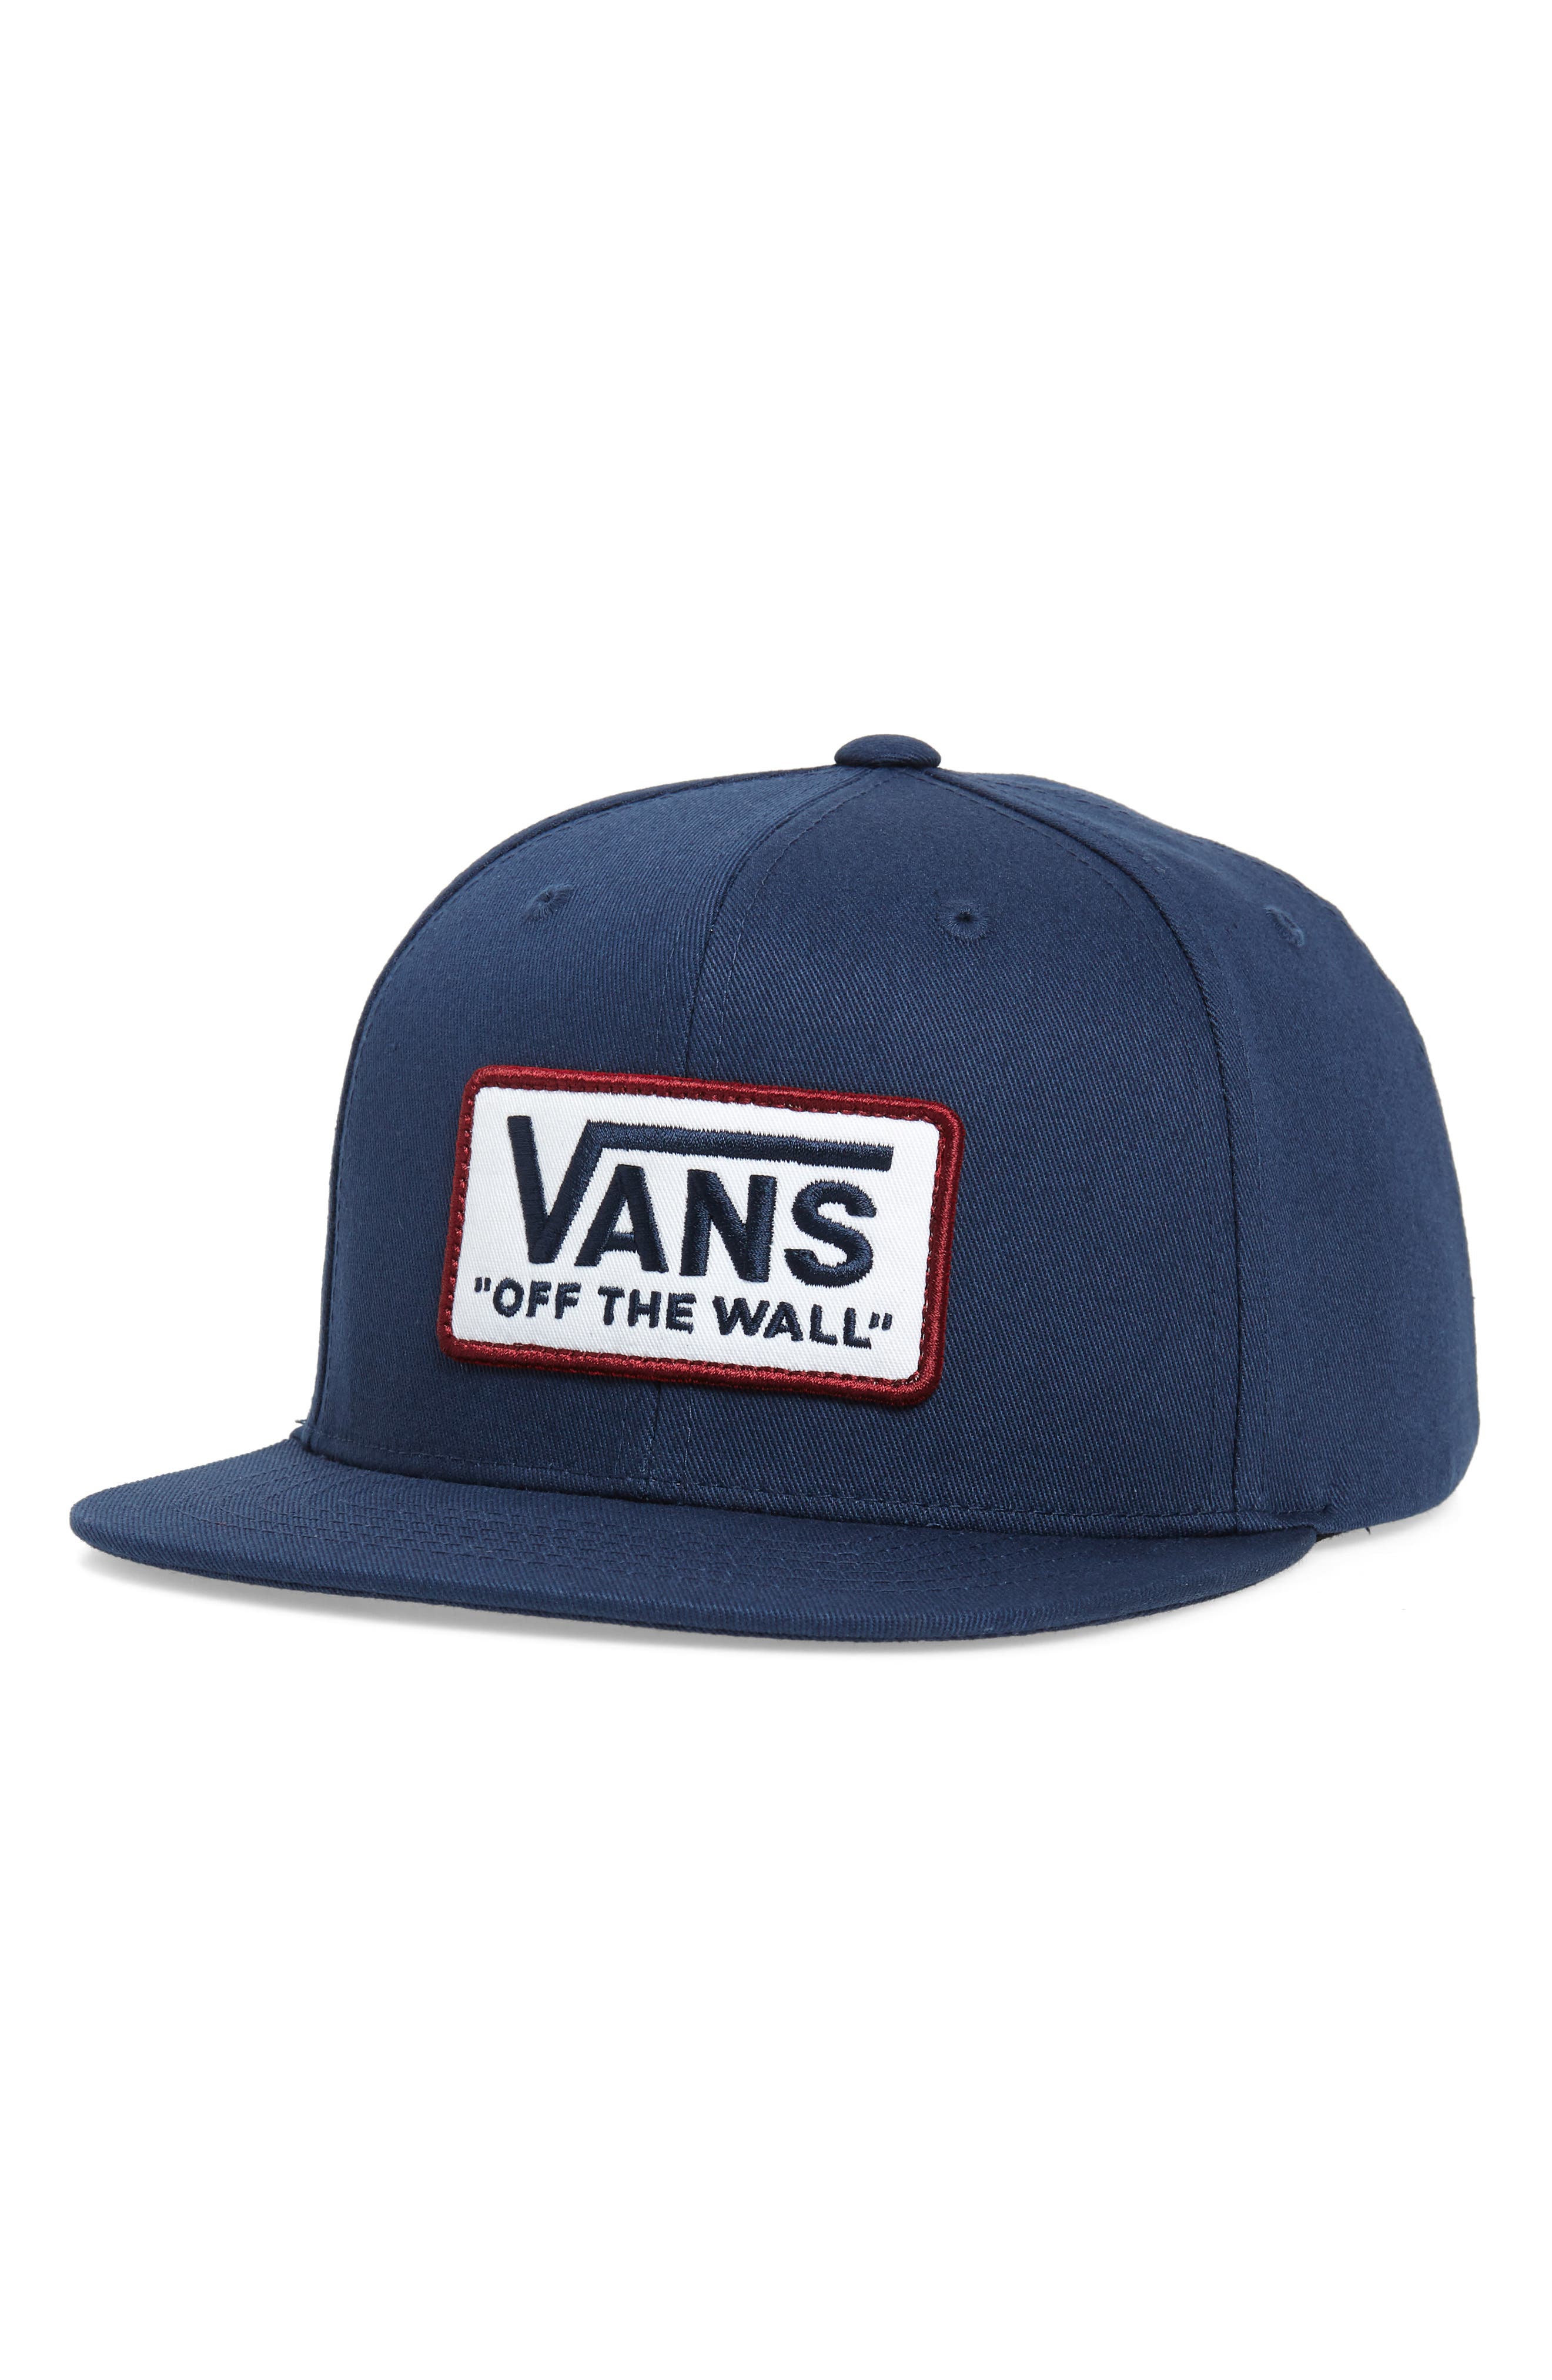 Vans Whitford Snapback Hat (Kids 